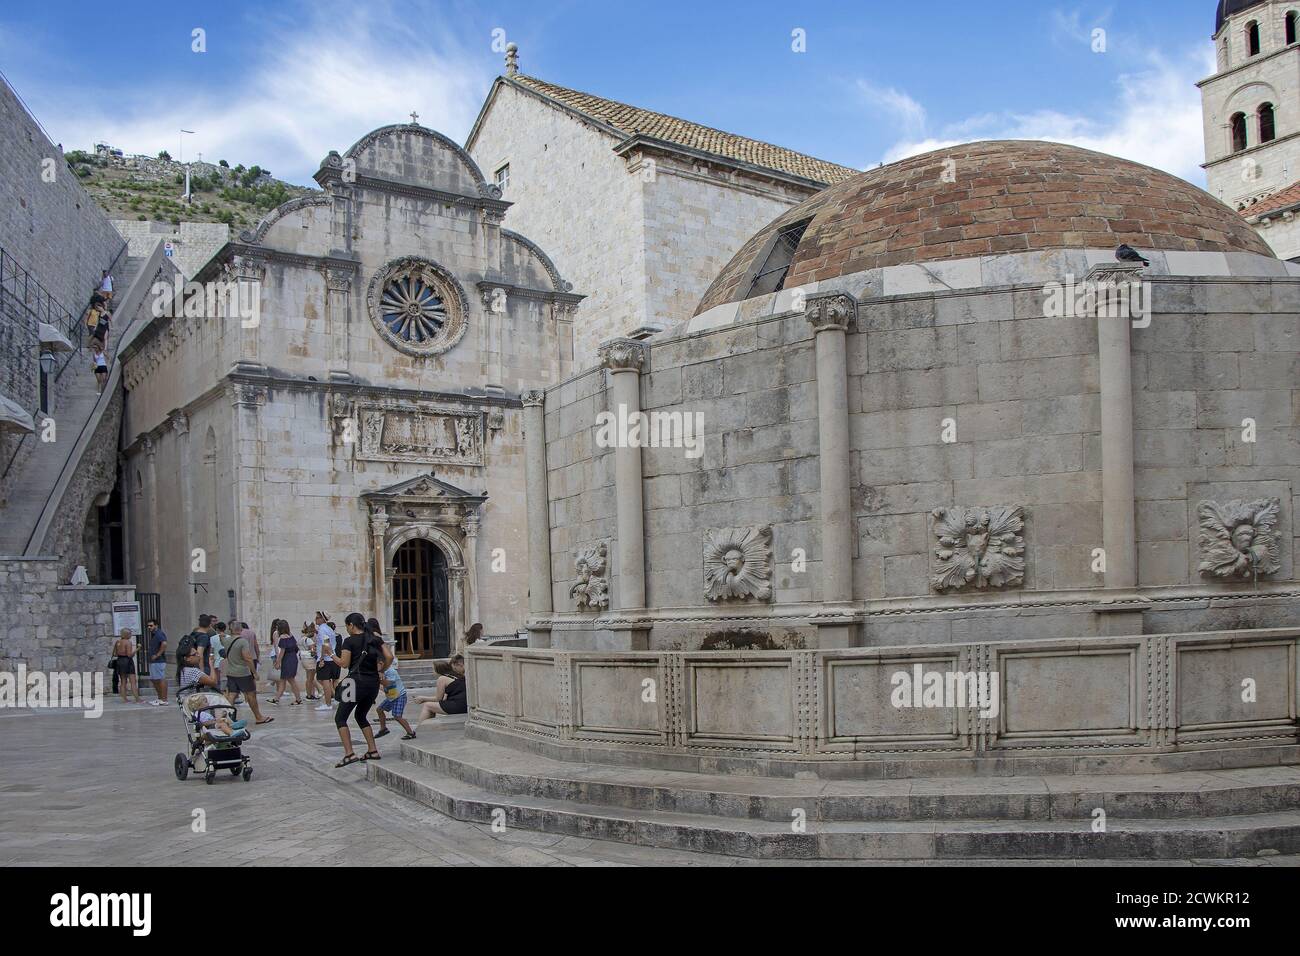 Dubrovnik, Croatie - 01 septembre 2020 : beaucoup de touristes près de la grande fontaine Onfrio avec de l'eau Banque D'Images